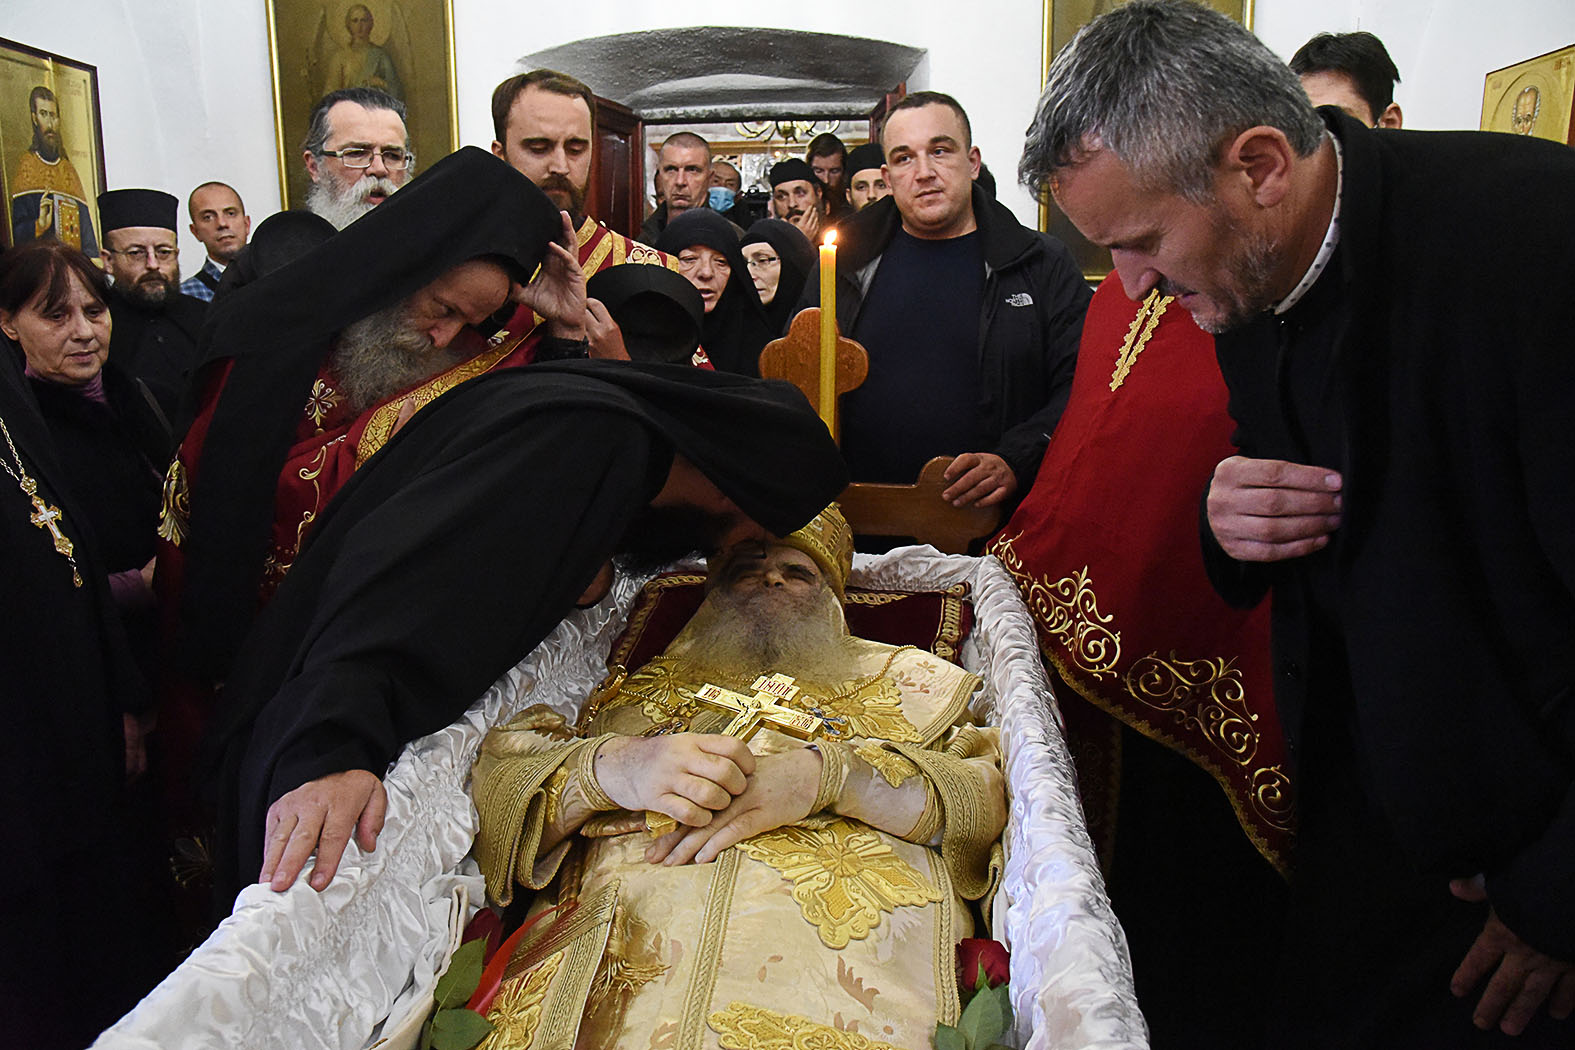 Amfilohije pátriárka temetése a Cetinje monostorban Montenegroban, 2020. október 30-án #moszkvater